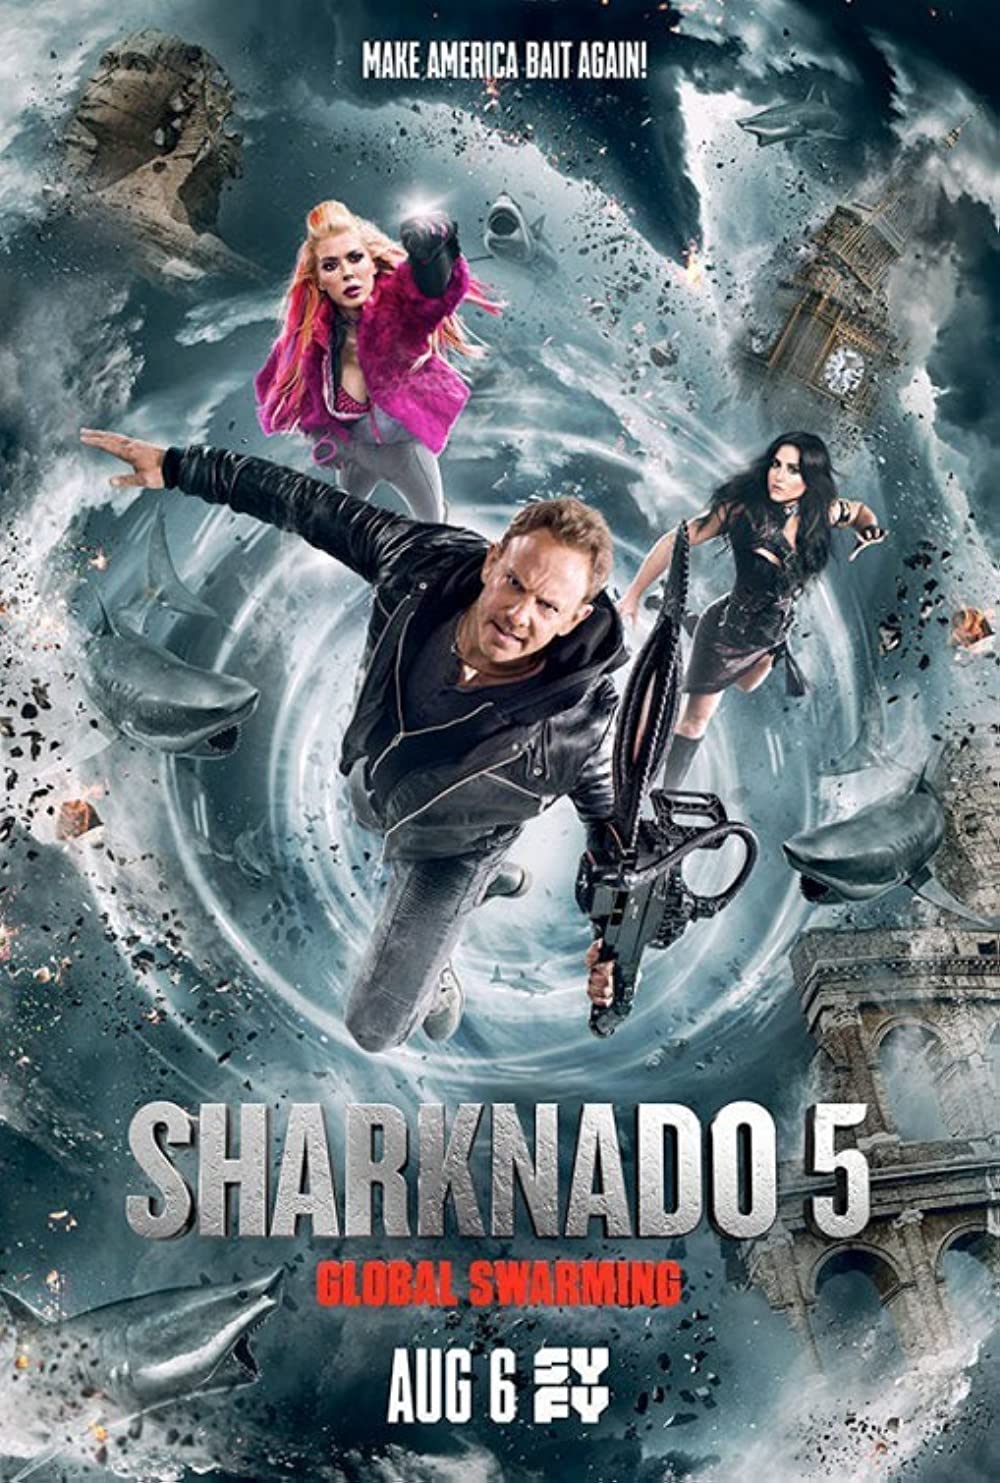 Filmbeschreibung zu Sharknado 5: Global Swarming